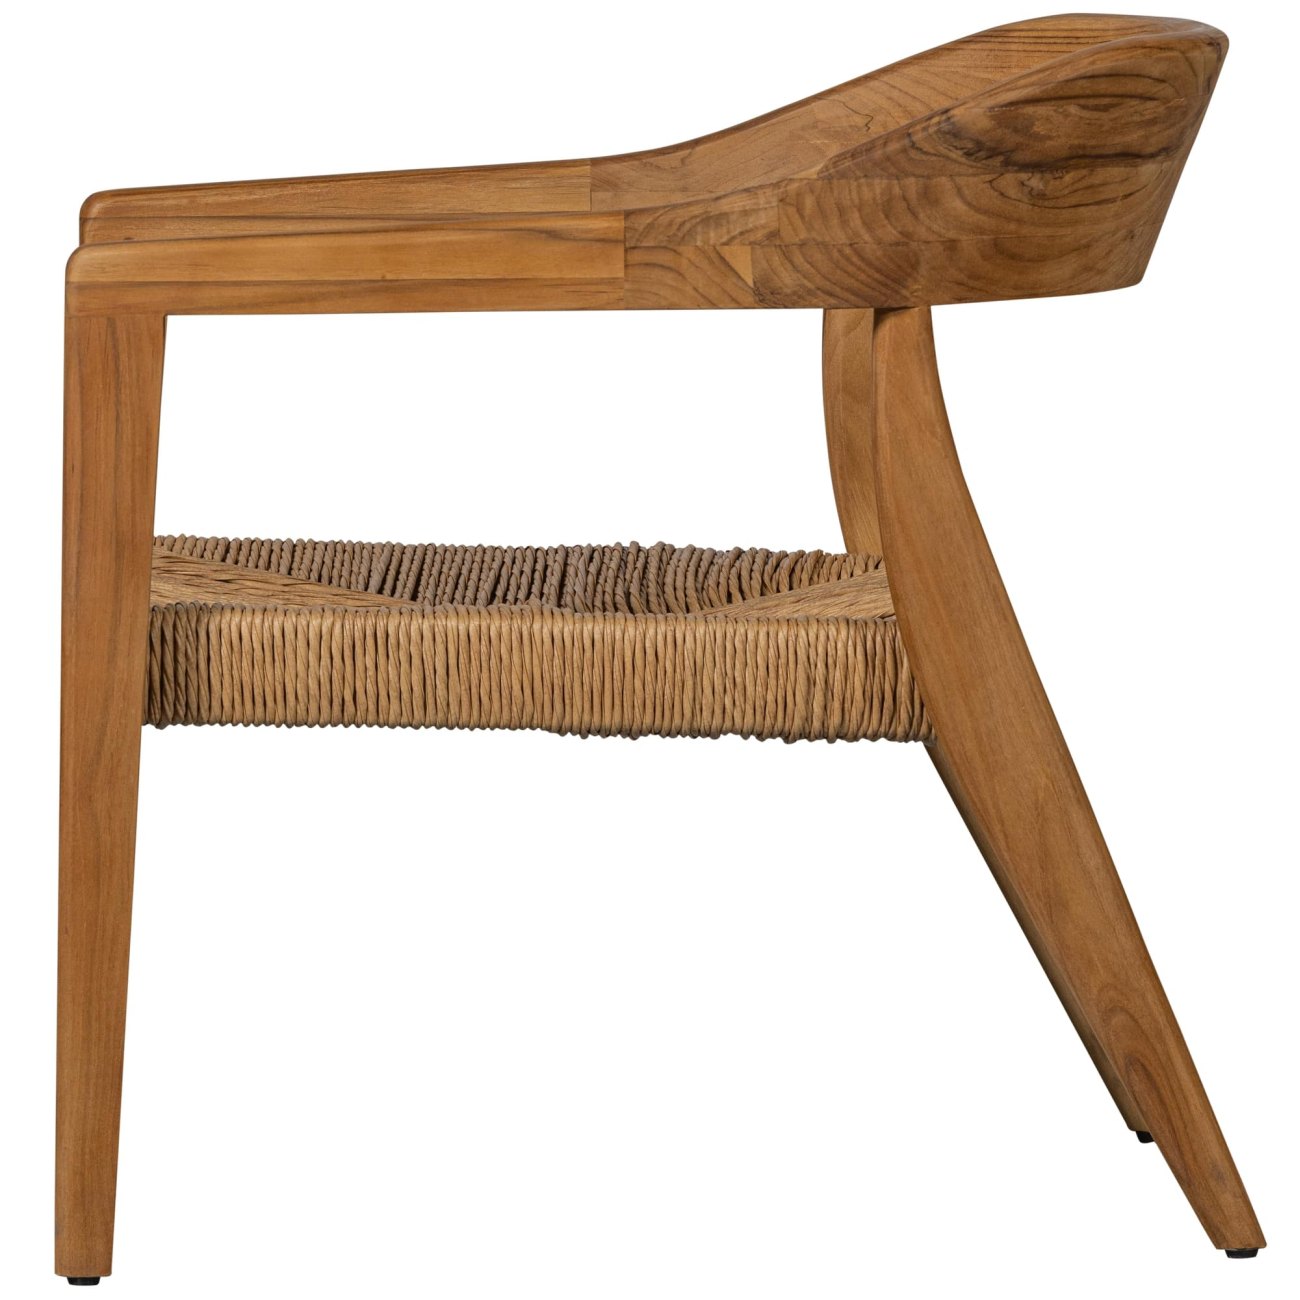 Der Gartensessel Chena überzeugt mit seinem modernen Design. Gefertigt wurde er aus Geflecht, welches einen natürlichen Farbton besitzt. Das Gestell ist aus Teakholz und hat eine natürliche Farbe. Der Sessel besitzt eine Sitzhöhe von 34 cm.